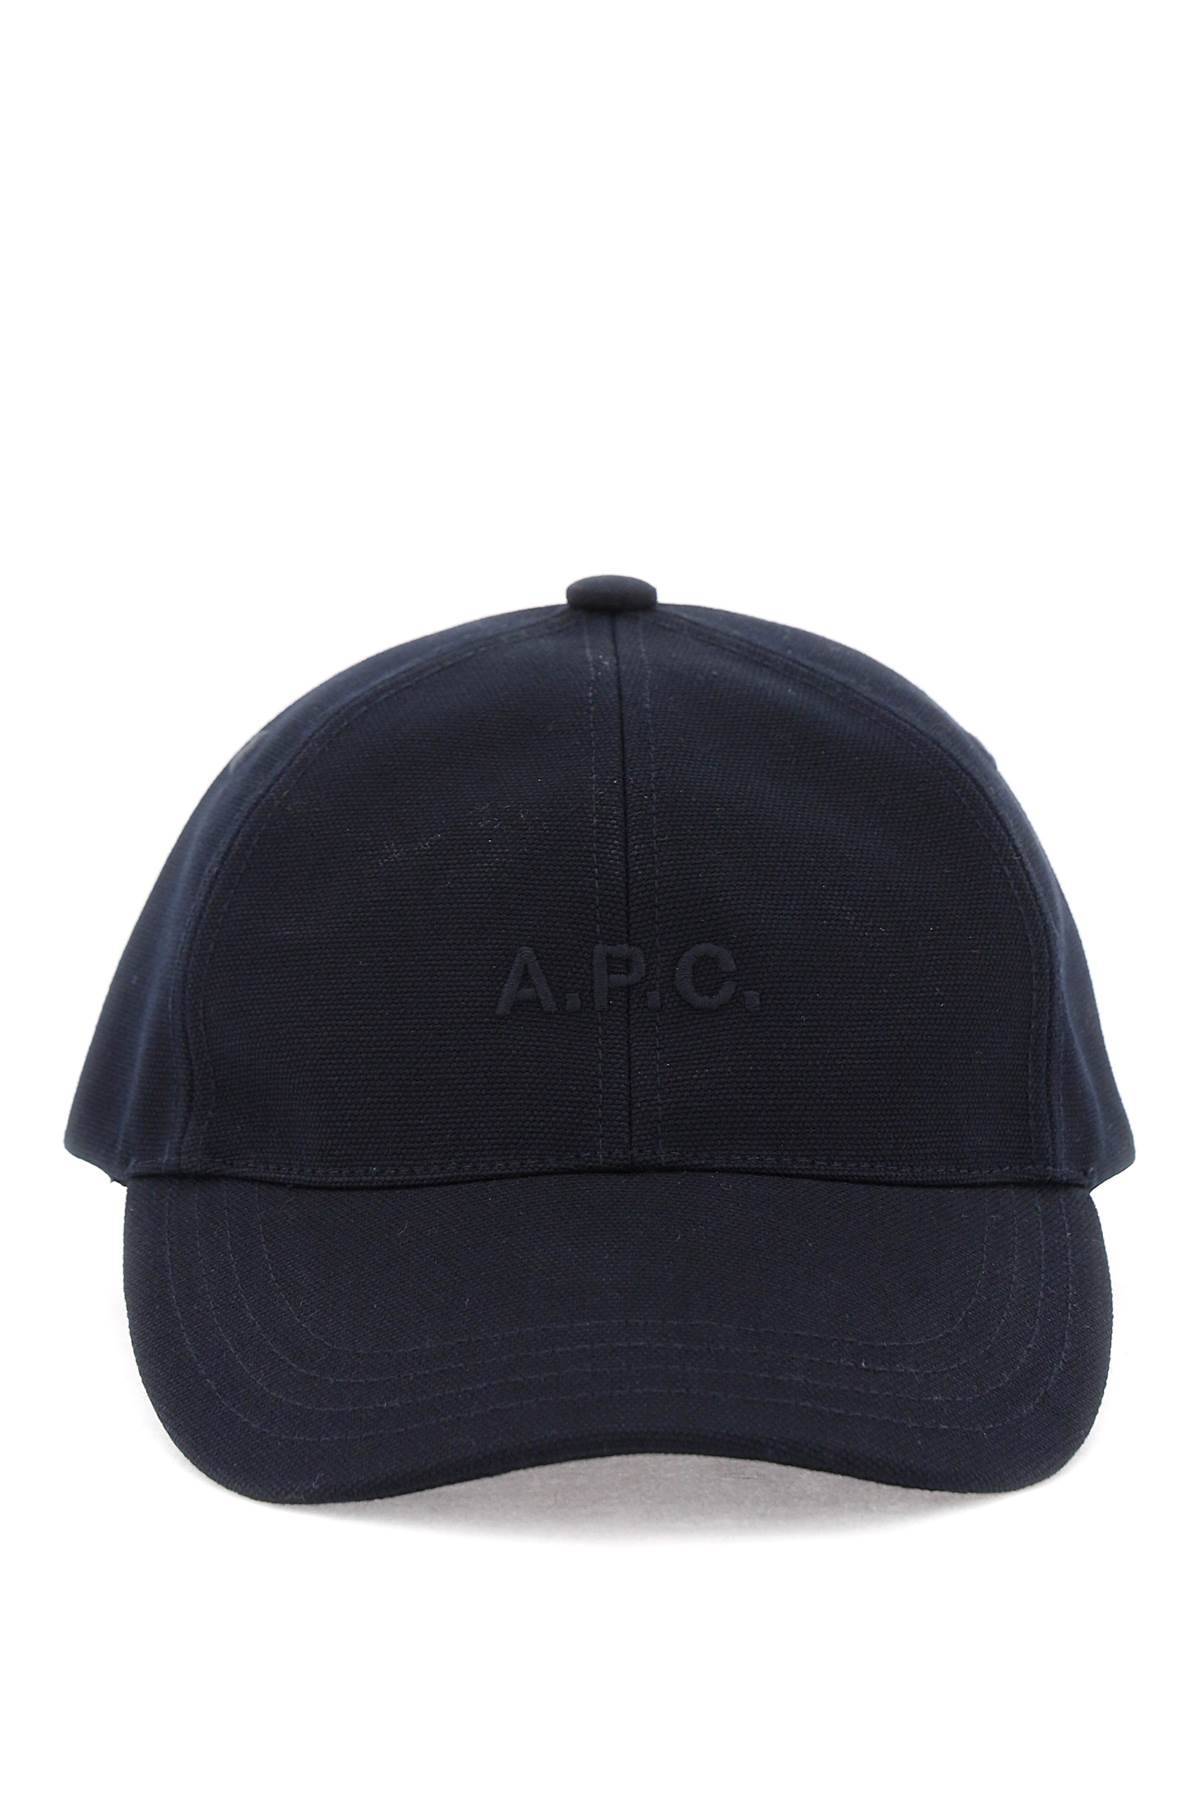 A.P.C. A. P.C. charlie baseball cap